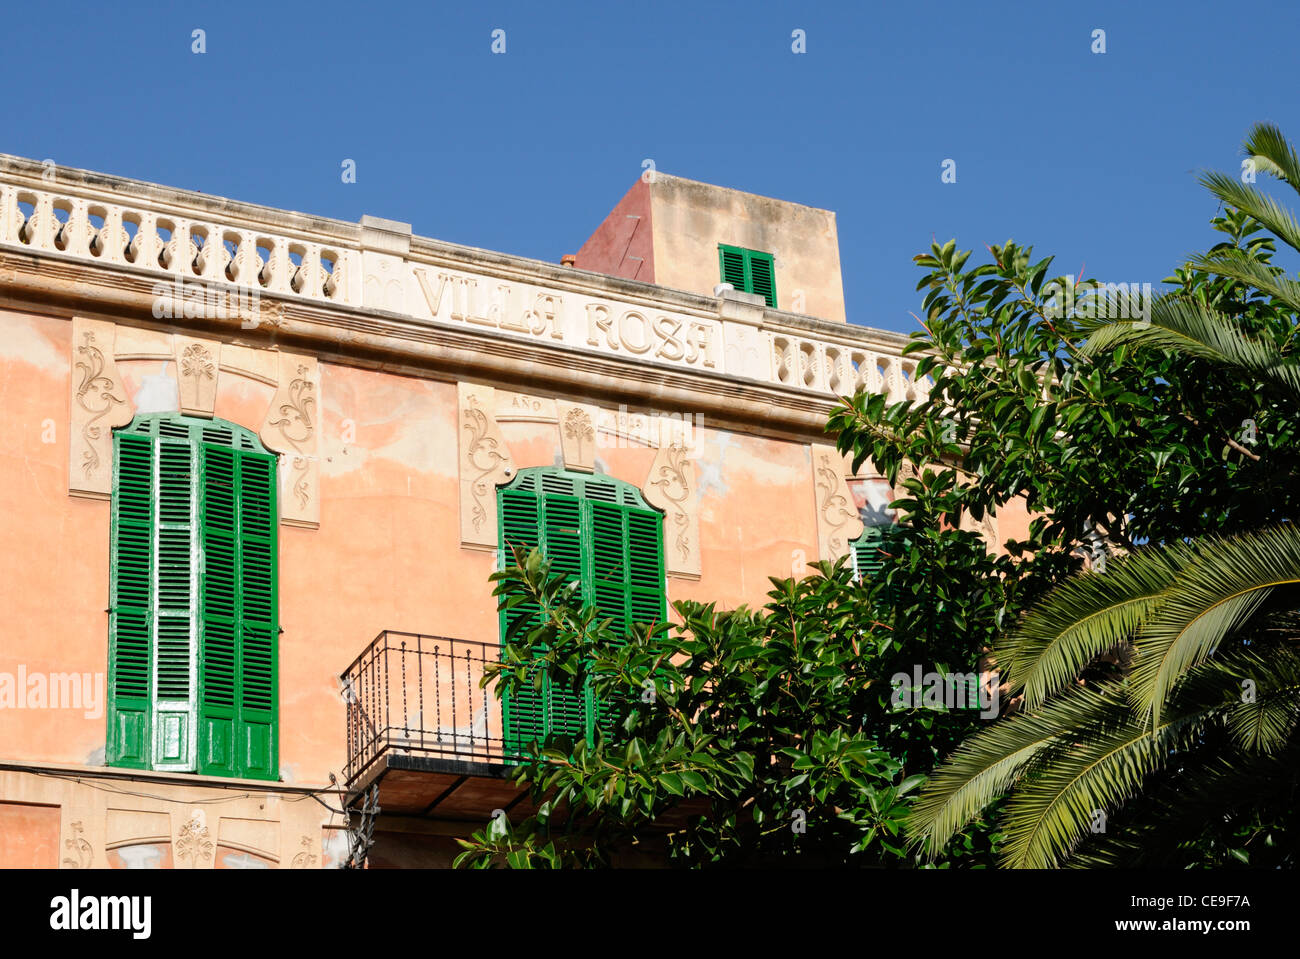 Villa mit grünen Fensterläden, Palma, Mallorca, Spanien, Europa. | Villa with green shutters, Palma, Majorca, Spain, Europe. Stock Photo